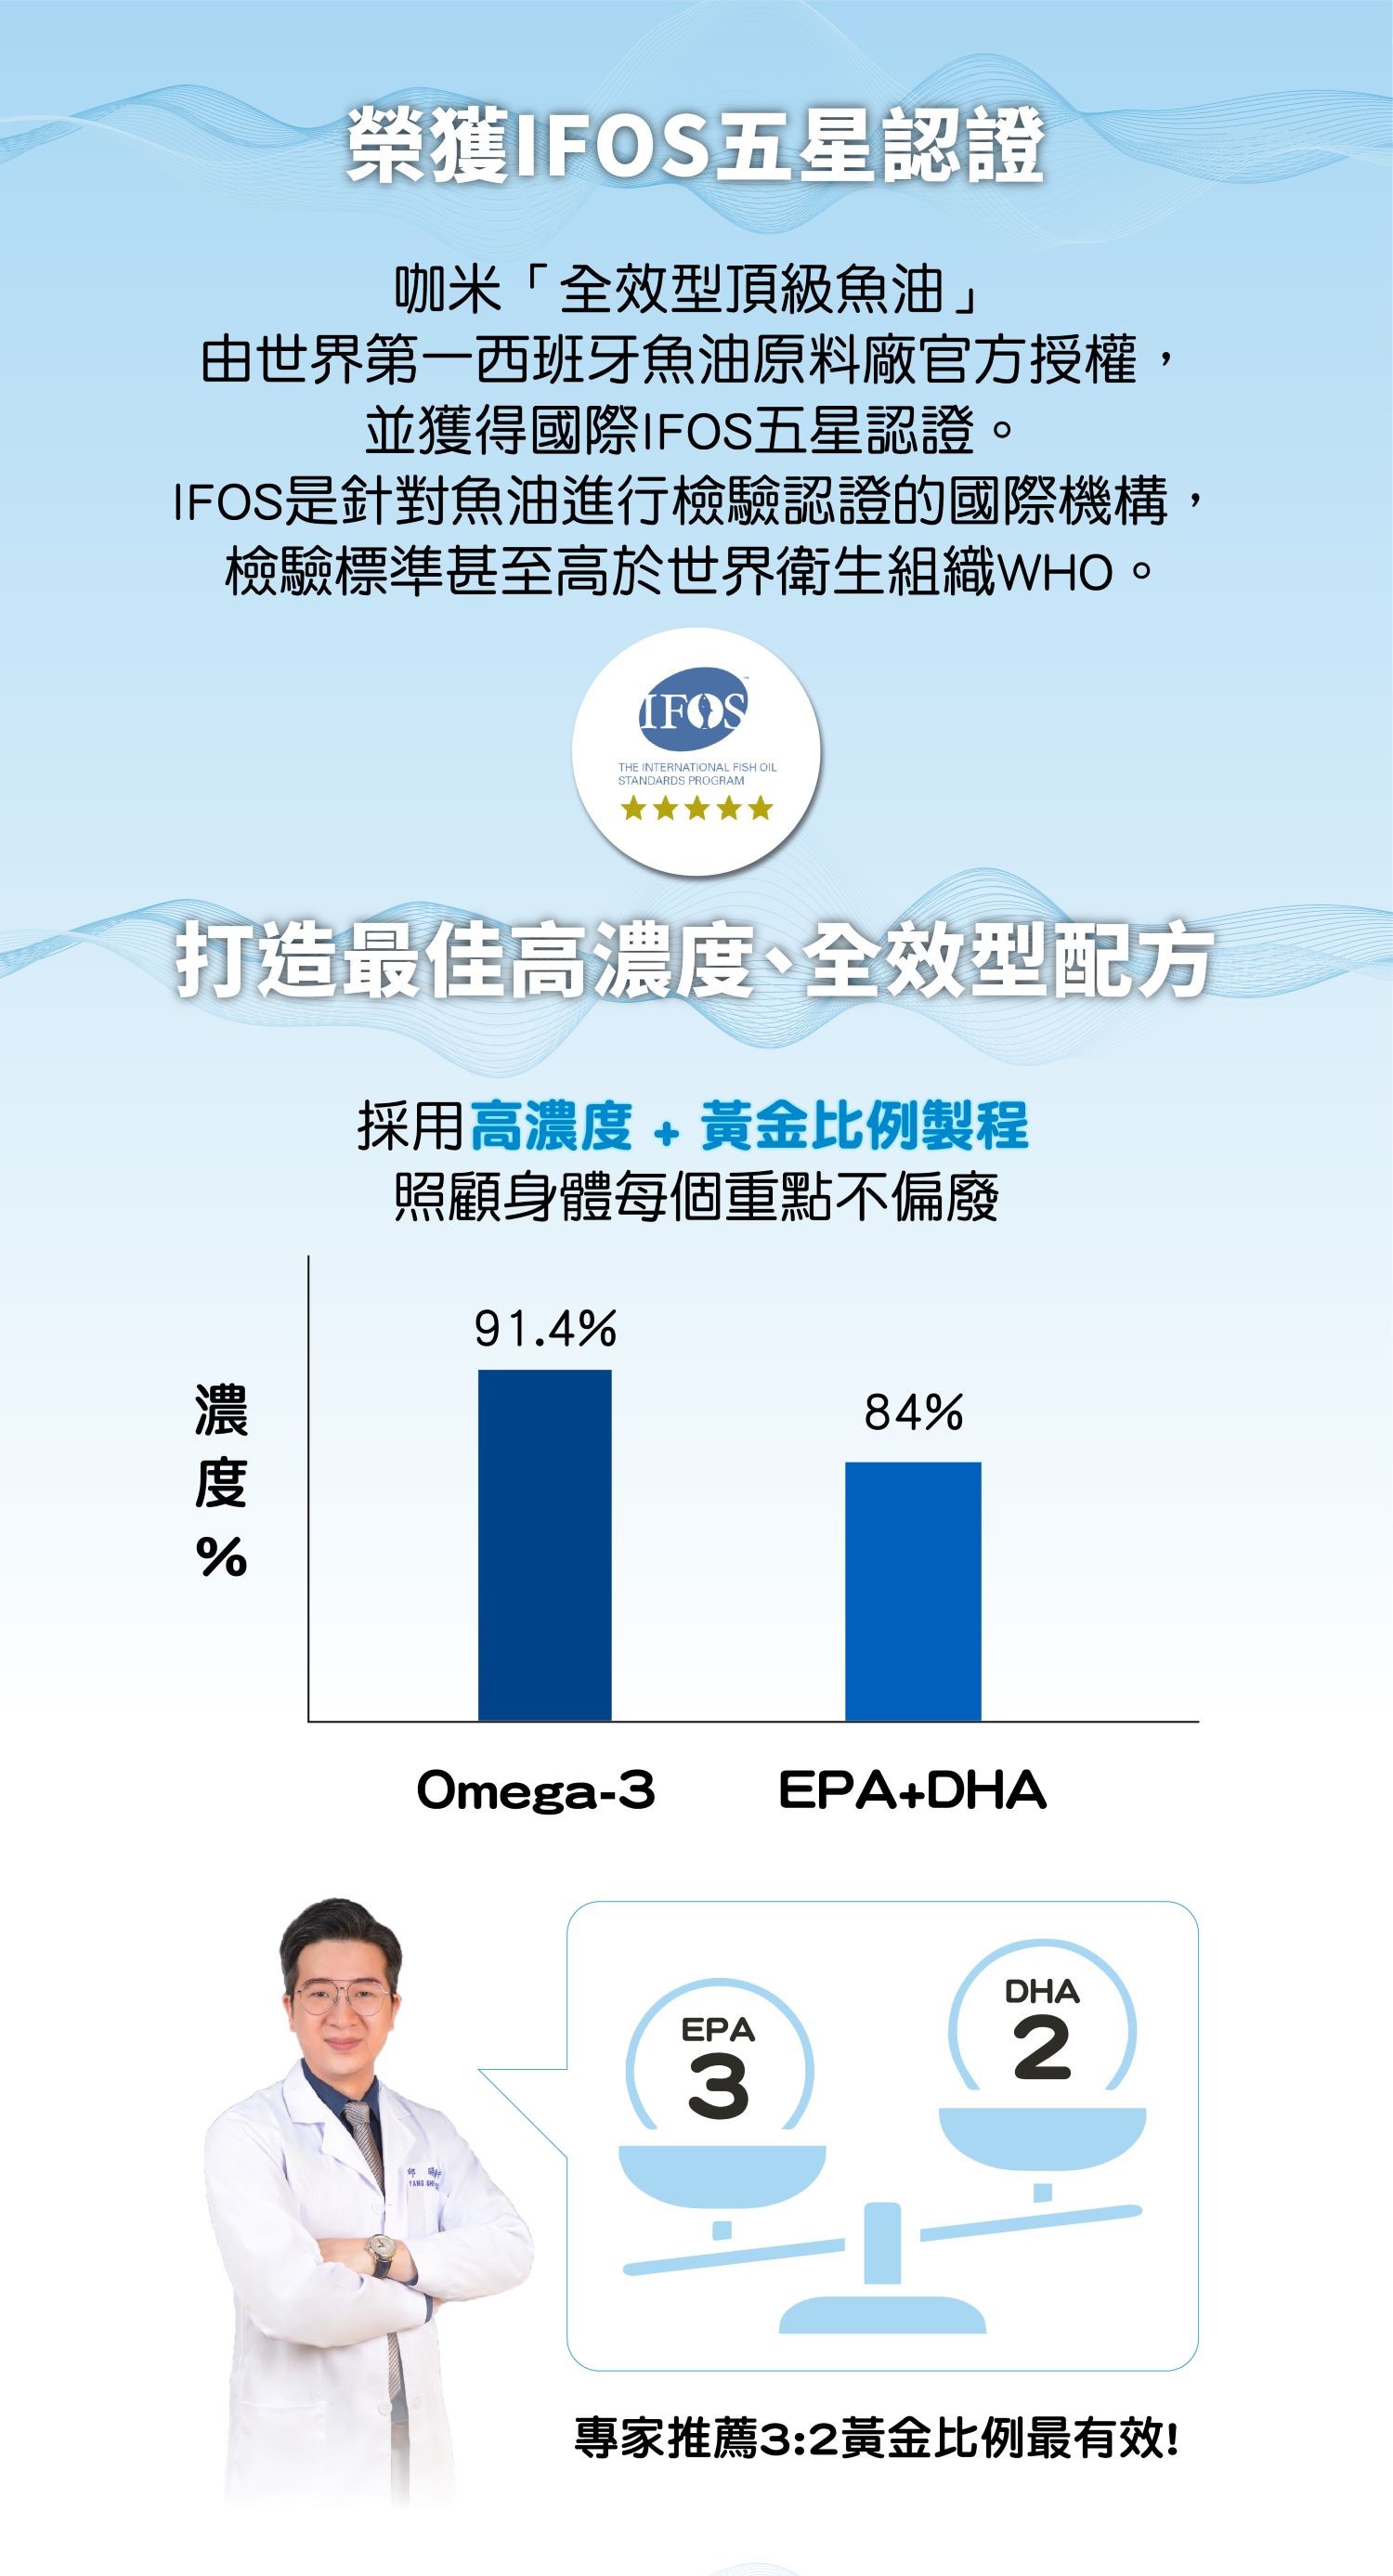 世界第一Solutex®原廠官方授權 獲IFOS™國際組織頂級魚油五星認證 IFOS™是世界唯一針對魚油檢測認證的機構，通過比世界衛生組織(WHO)還嚴格的檢驗標準，榮獲IFOS™最高的評價5顆星。【打造最佳全效型、高濃度配方】 Omega-3濃度91.4%、EPA+DHA濃度84%，採用黃金比例3：2製程，照顧到身體每個重點、不偏廢。 ________________________________________ 【全球獨家Cleantex™ + 超臨界萃取】 做出像水晶般純淨、沒有魚腥味的頂級、純粹、高濃度的咖米魚油，直接咬破膠囊食用也可以。